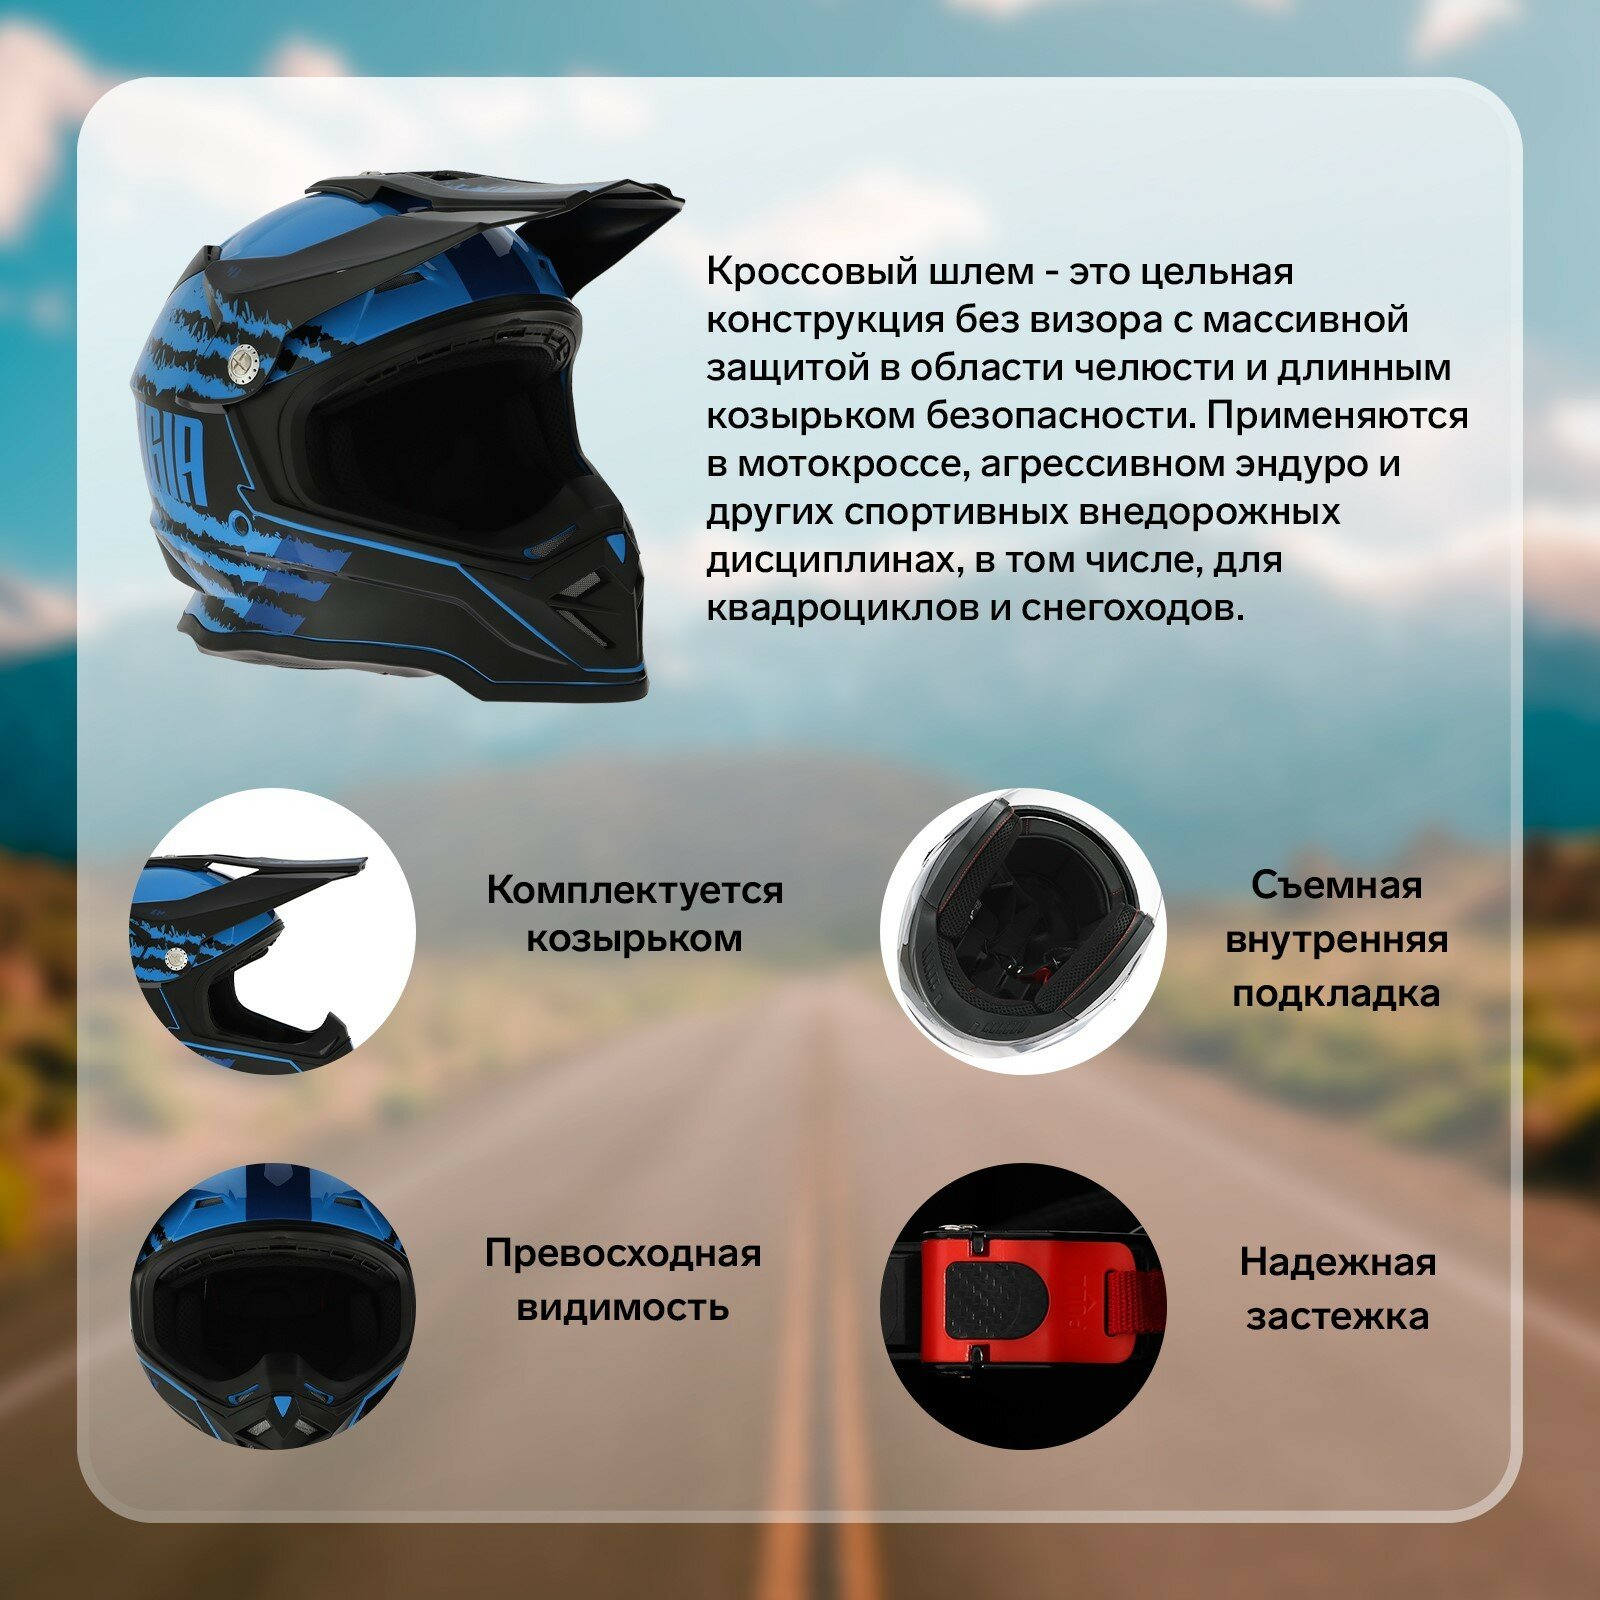 Шлем кроссовый, размер M, модель - BLD-819-7, черно-синий 9845800